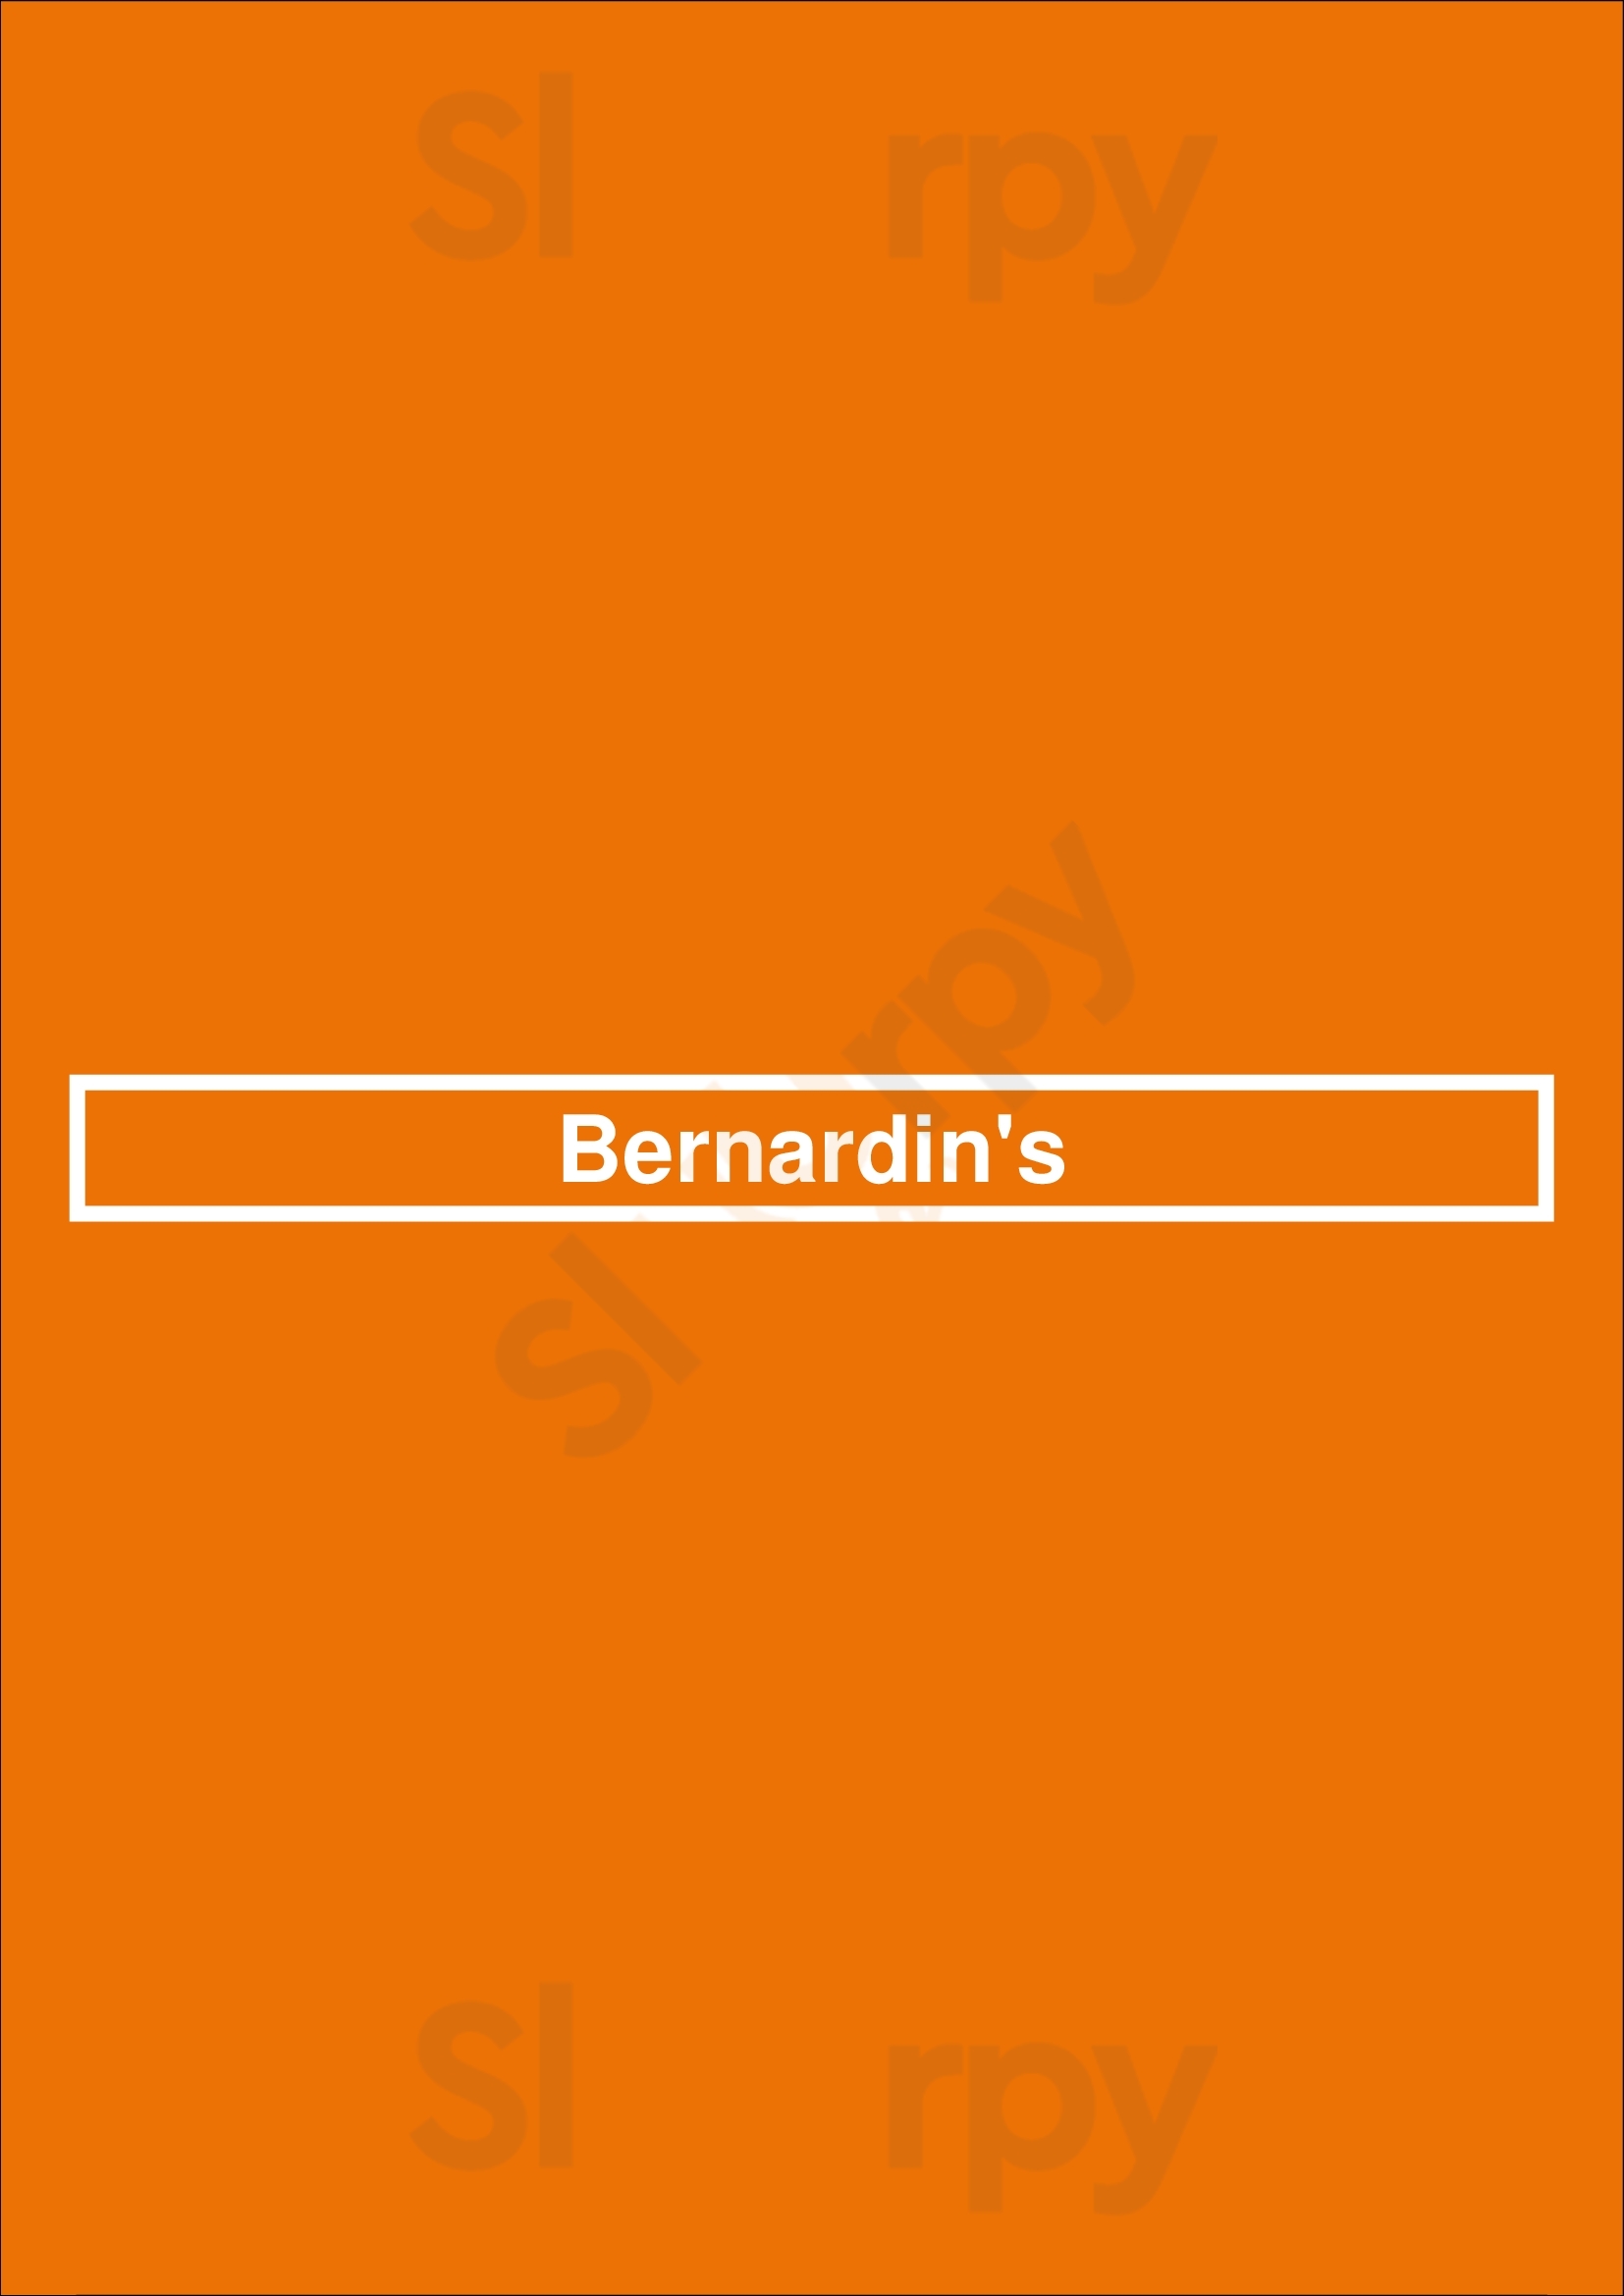 Bernardin's Charlotte Menu - 1